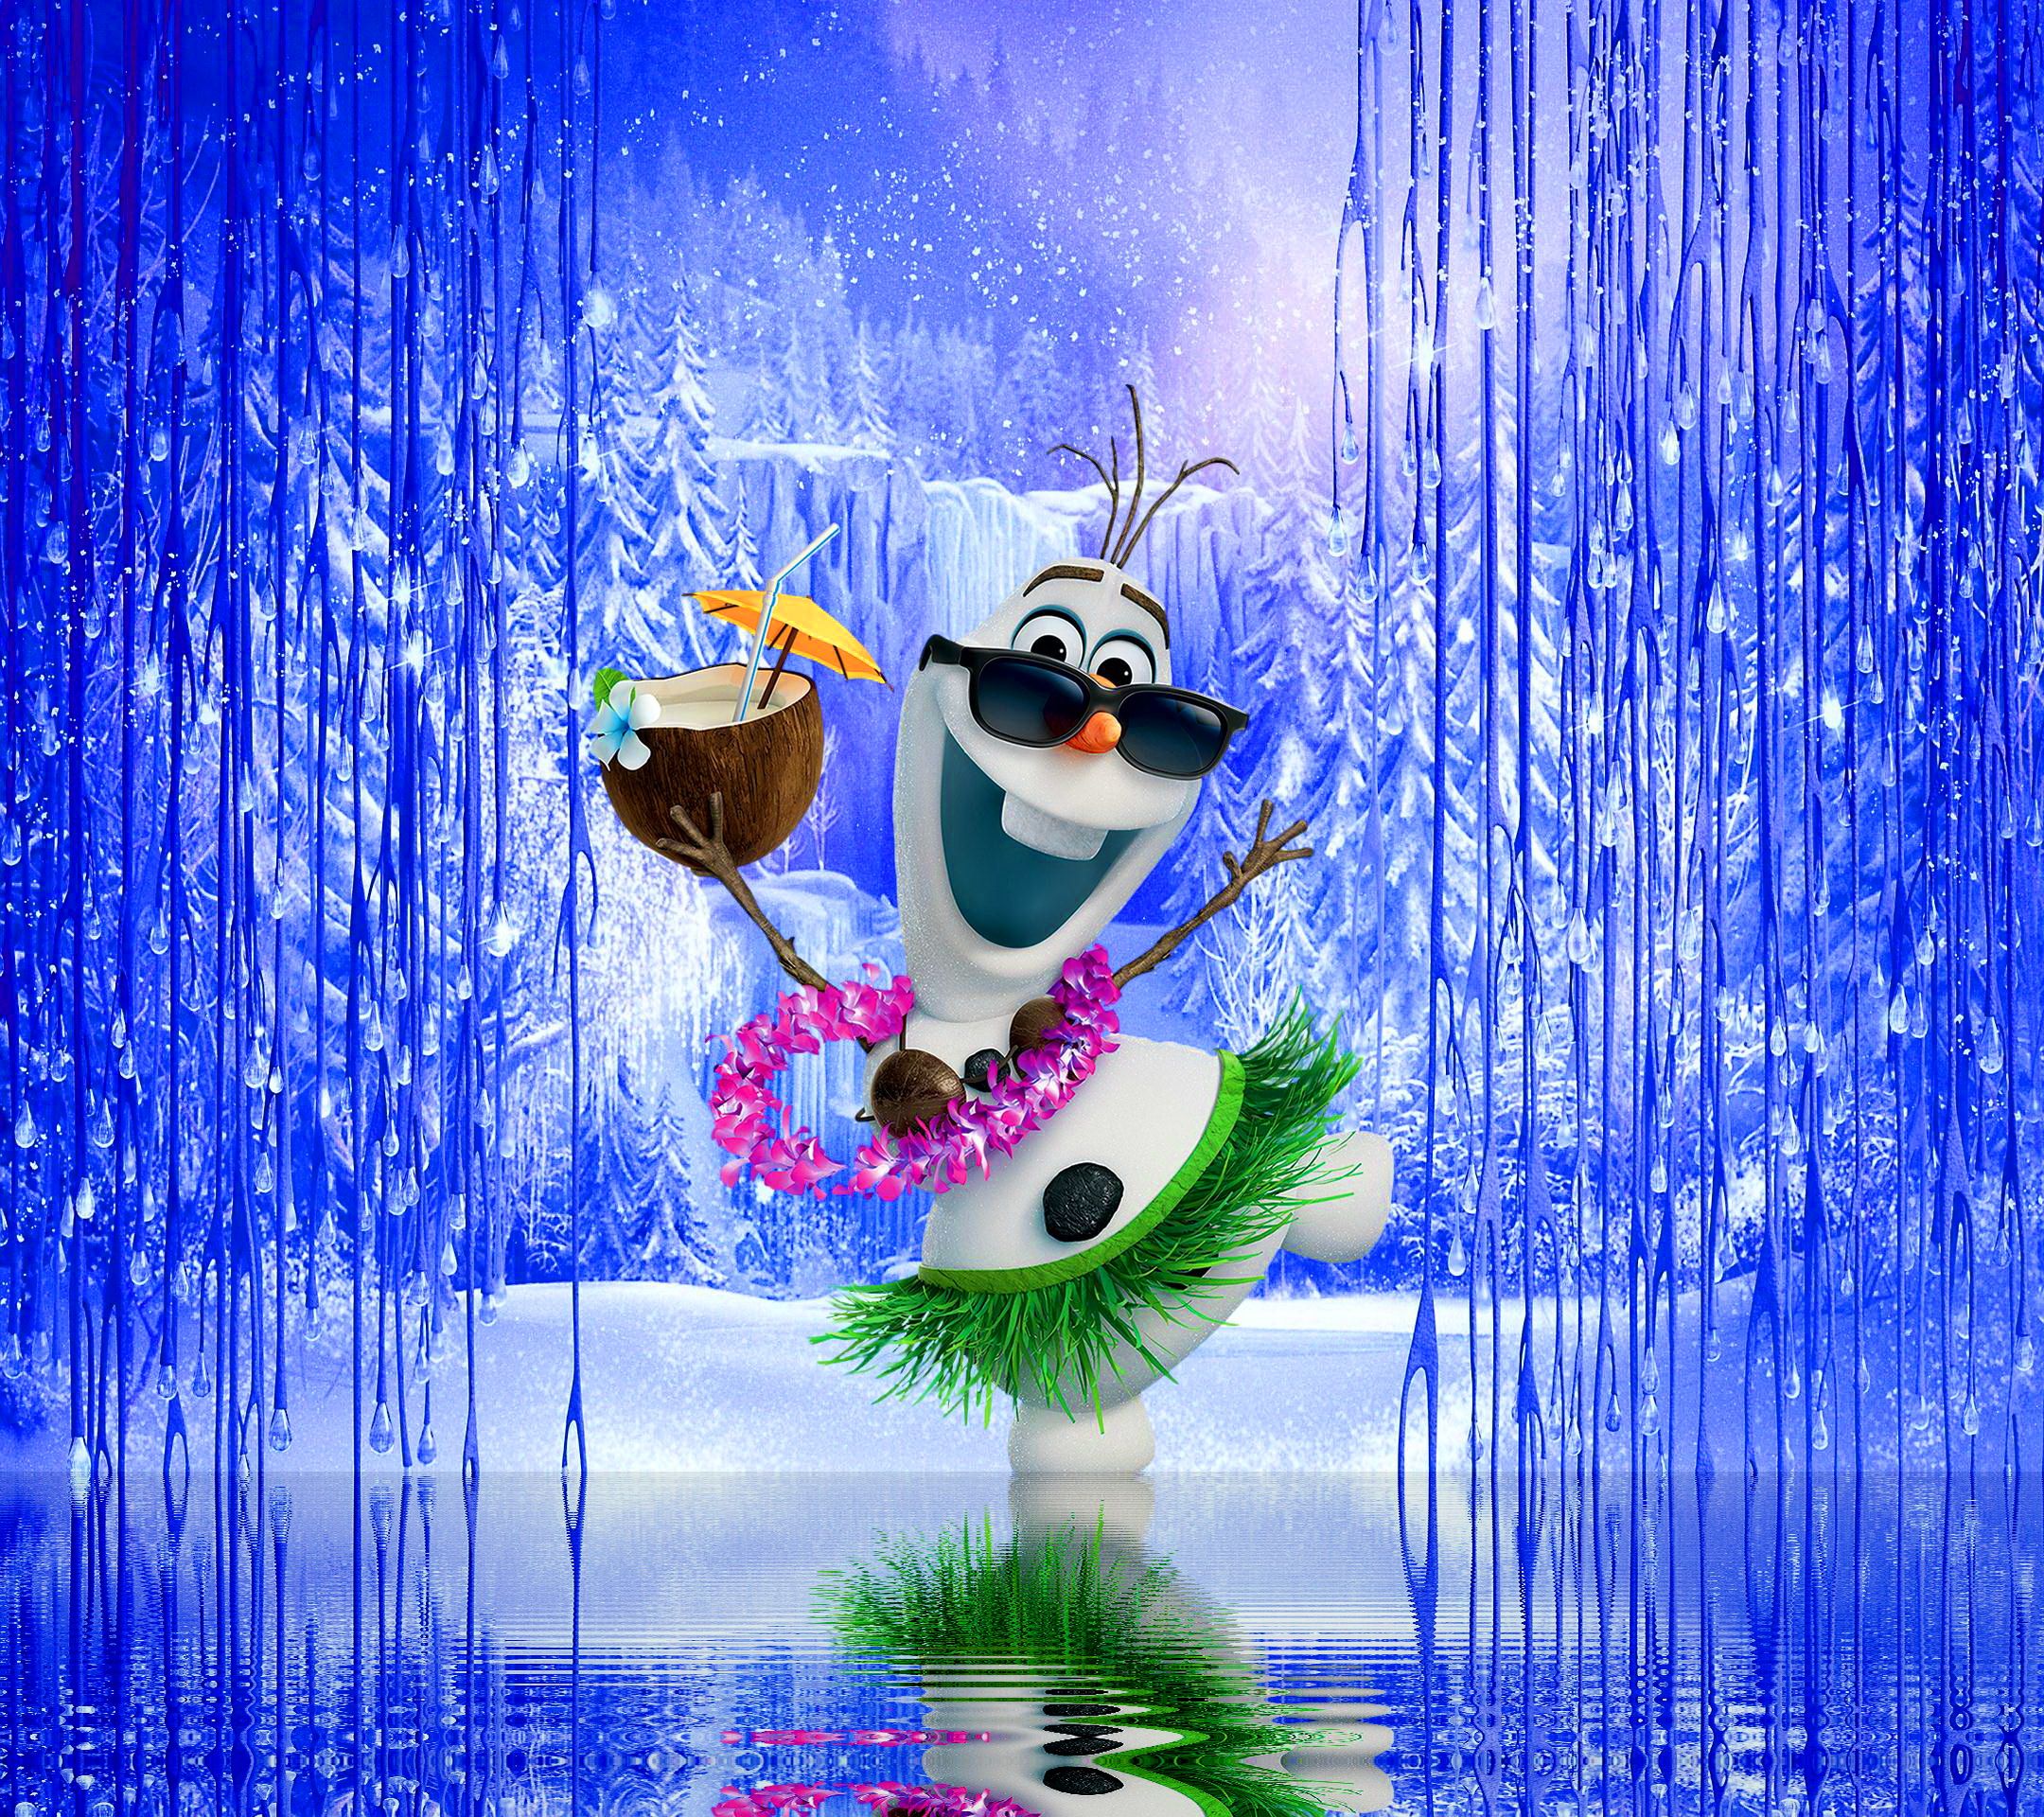 Best Photo of Olaf From Frozen Wallpaper Frozen Olaf